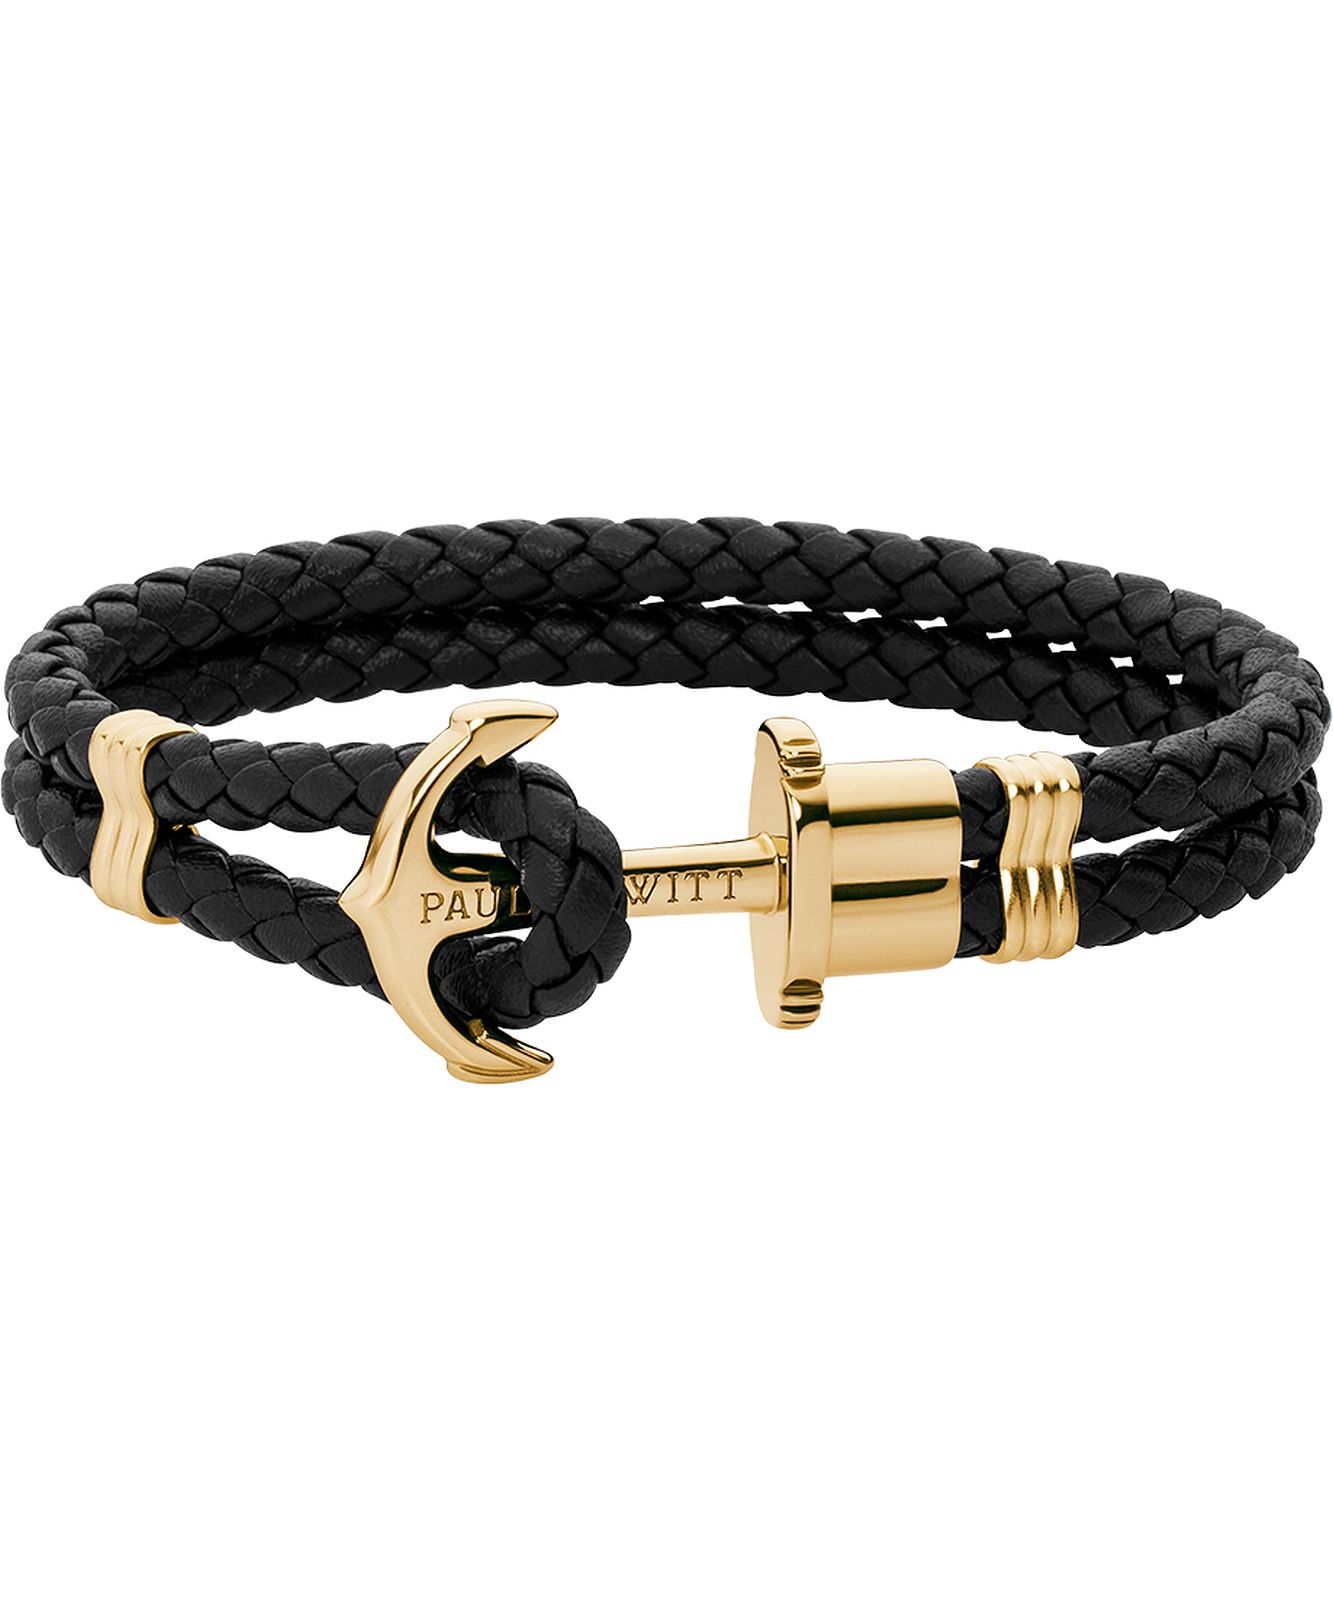 Men's anchor bracelet Phrep bonded leather » brass & black – PAUL HEWITT